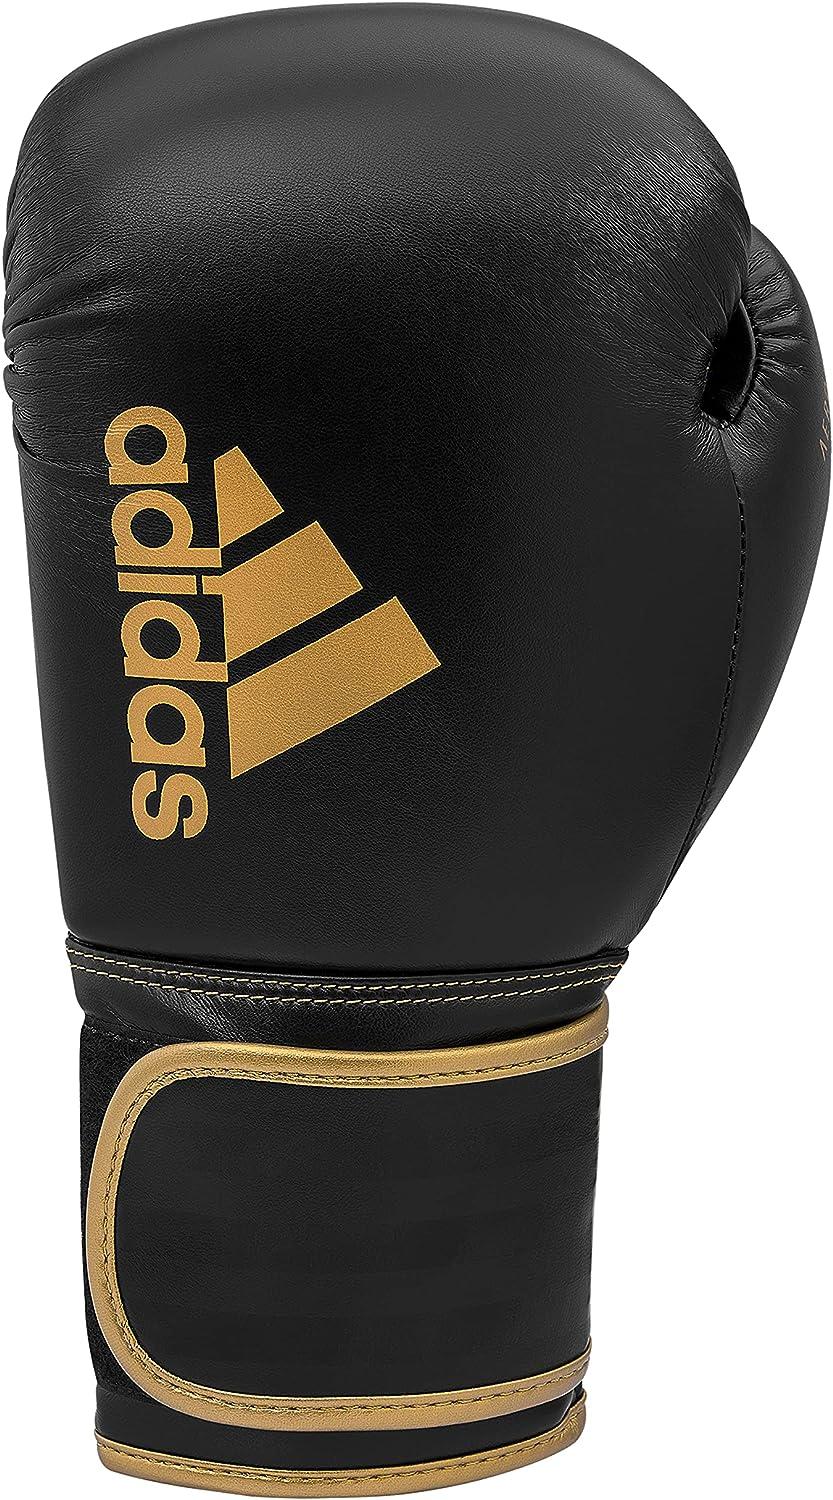 Adidas Boxing Gloves - Hybrid 80 - for Boxing, Kickboxing, MMA, Bag,  Training & Fitness - Boxing Gloves for Men, Women & Kids Black/Gold 12oz